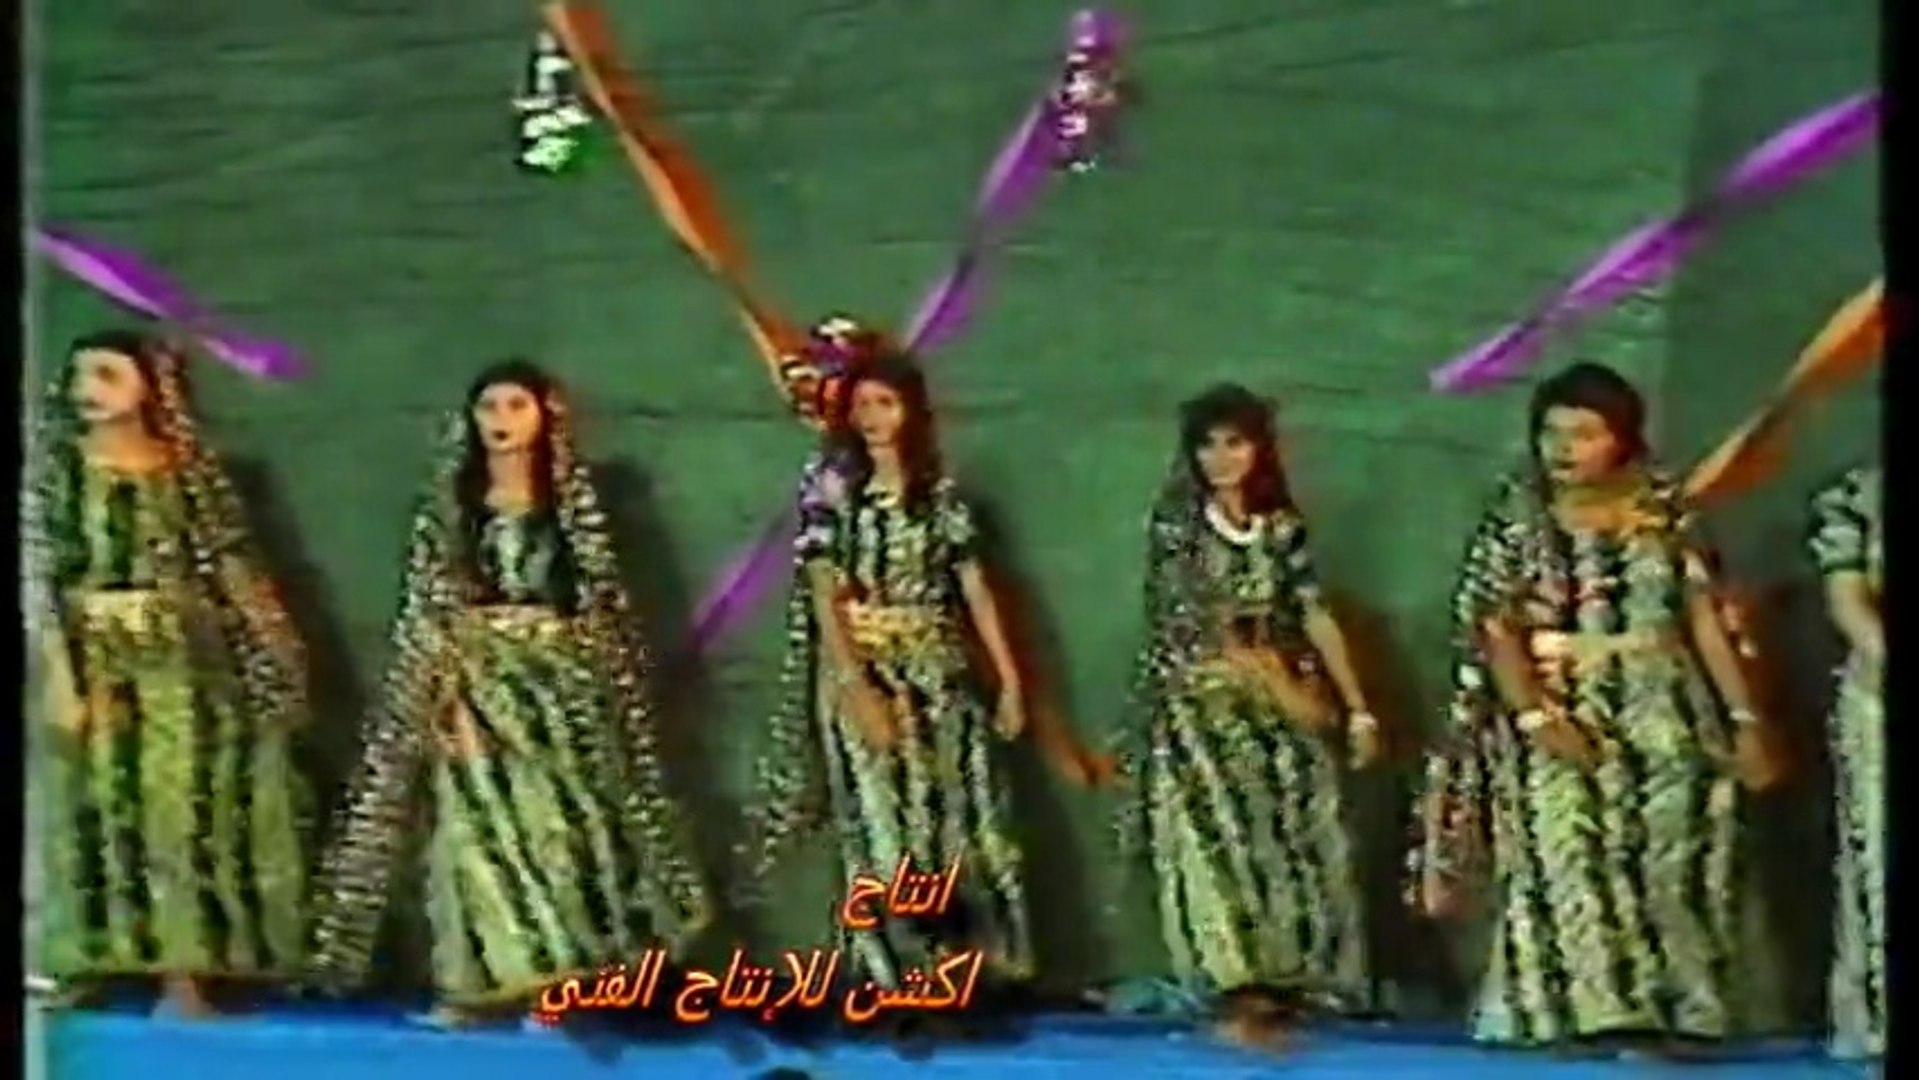 قائمة dance رقص يمني بواسطة اكشن للانتاج الفني - Dailymotion